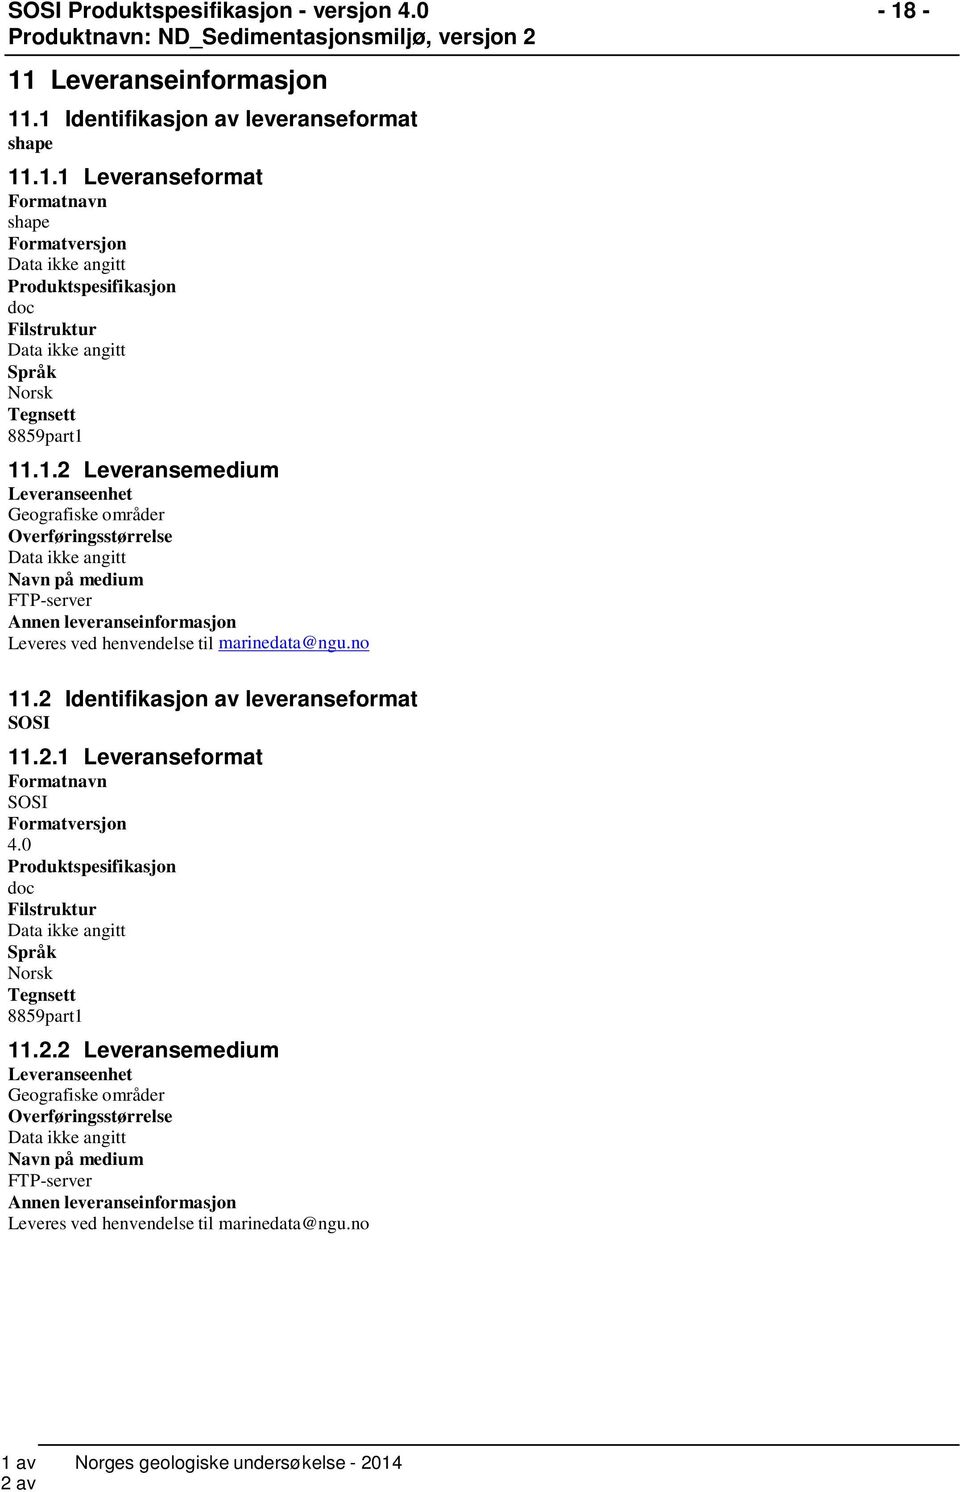 no - 18-11.2 Identifikasjon av leveranseformat SOSI 11.2.1 Leveranseformat Formatnavn SOSI Formatversjon 4.0 Produktspesifikasjon doc Filstruktur Språk Norsk Tegnsett 8859part1 11.